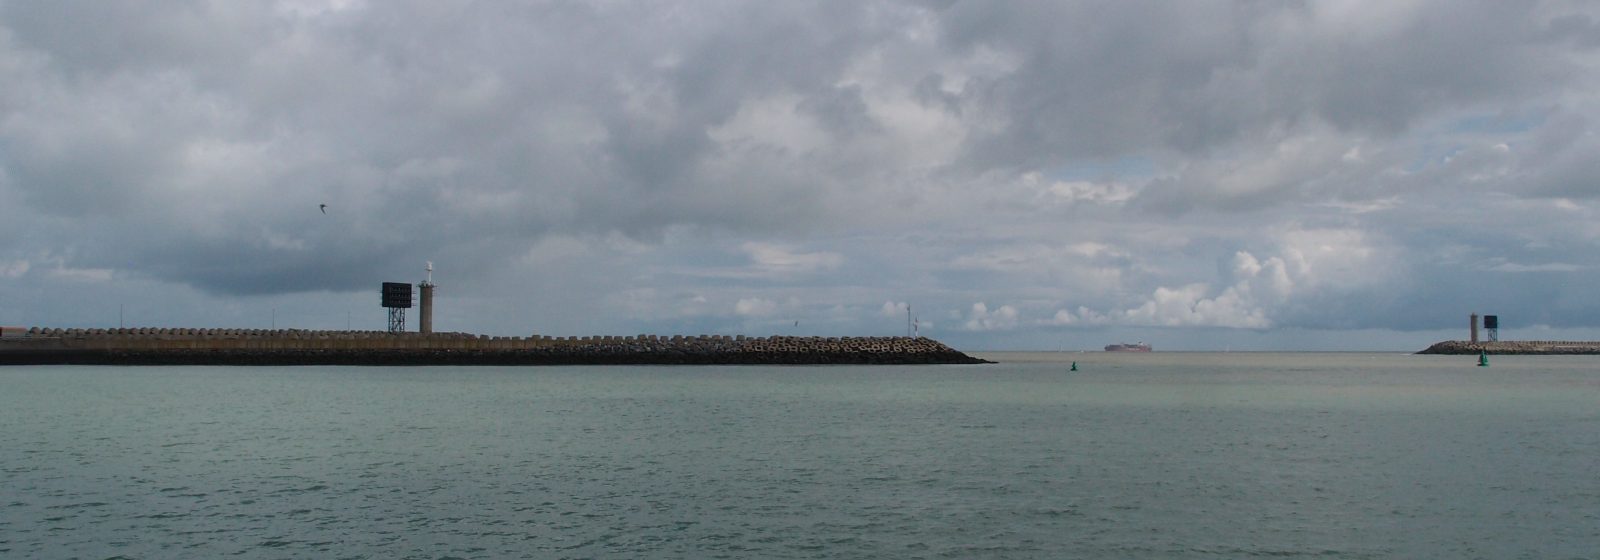 De havenmond op het einde van de strekdammen Zeebrugge